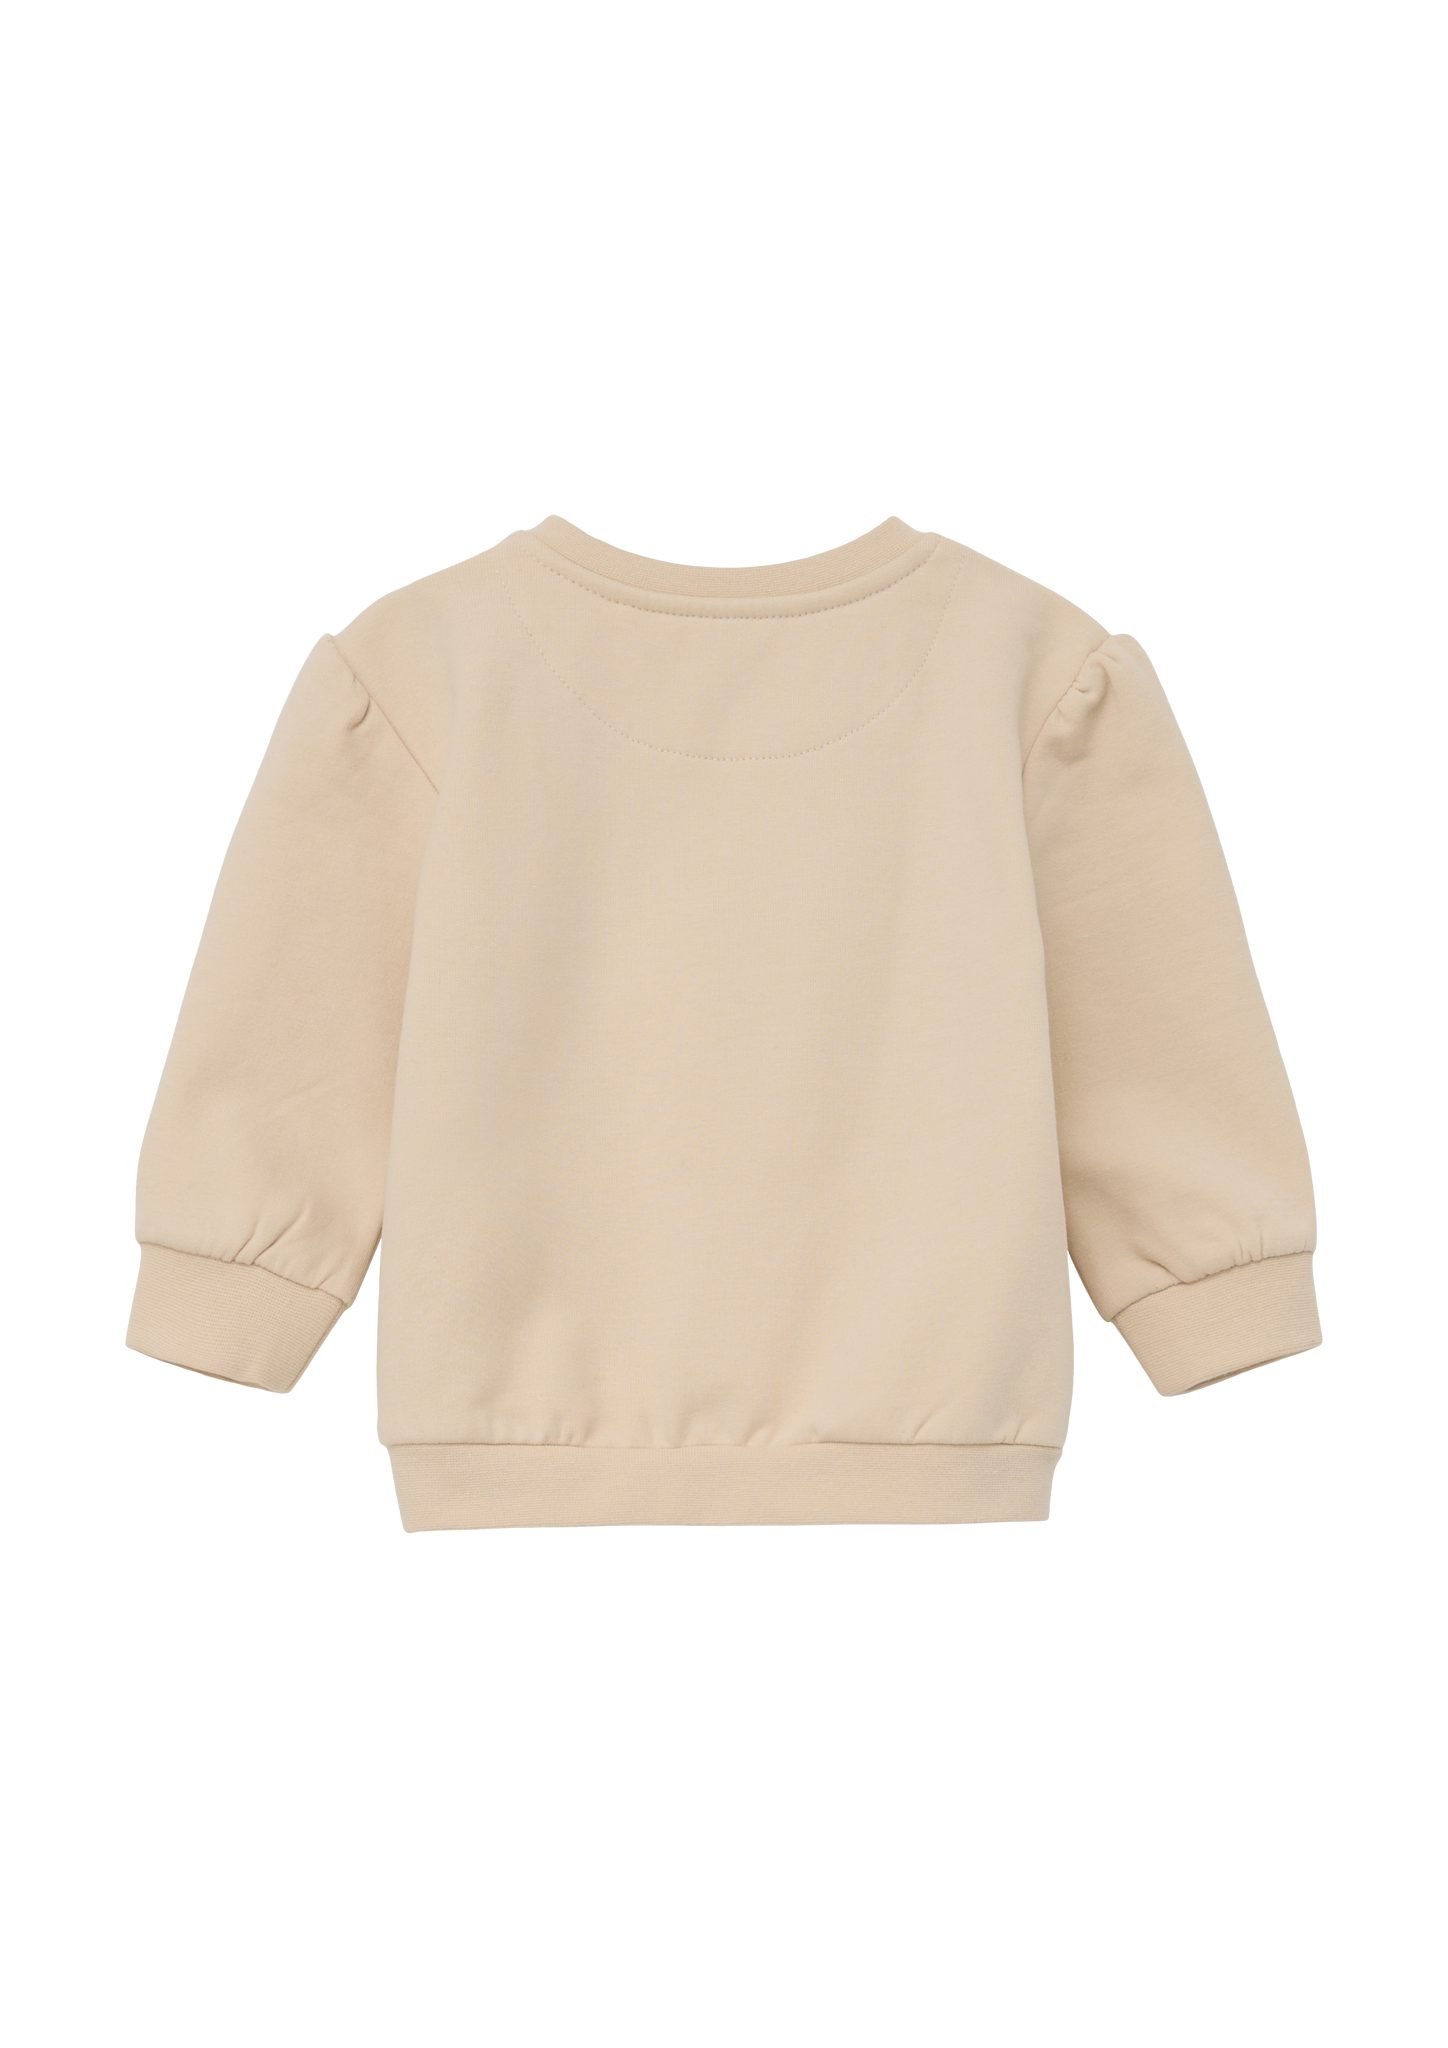 Pailletten, Sweatshirt s.Oliver beige Raffung mit Sweater Fransen, Frontprint